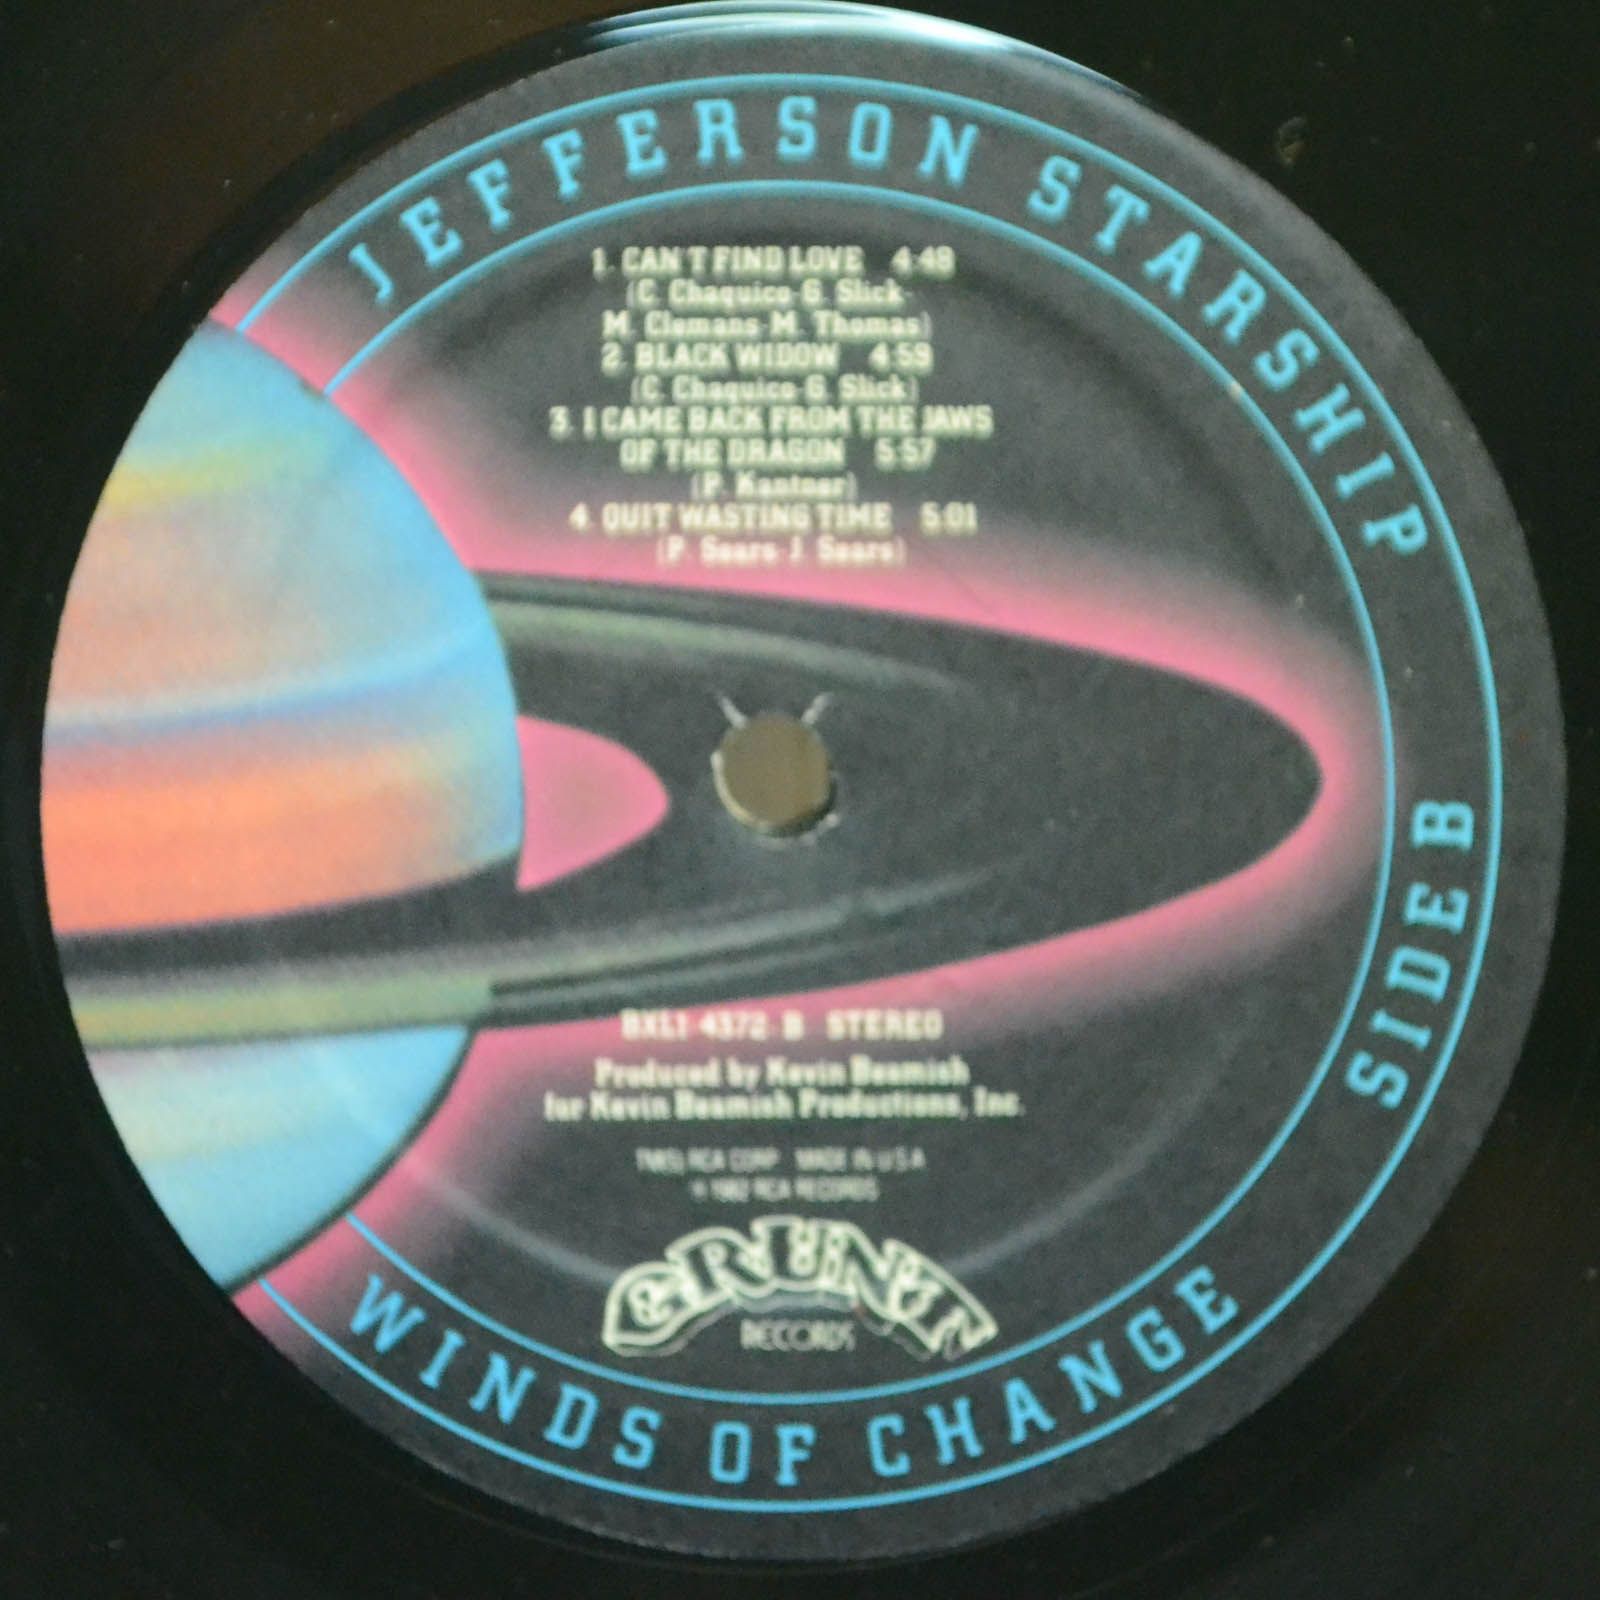 Jefferson Starship — Winds Of Change, 1982